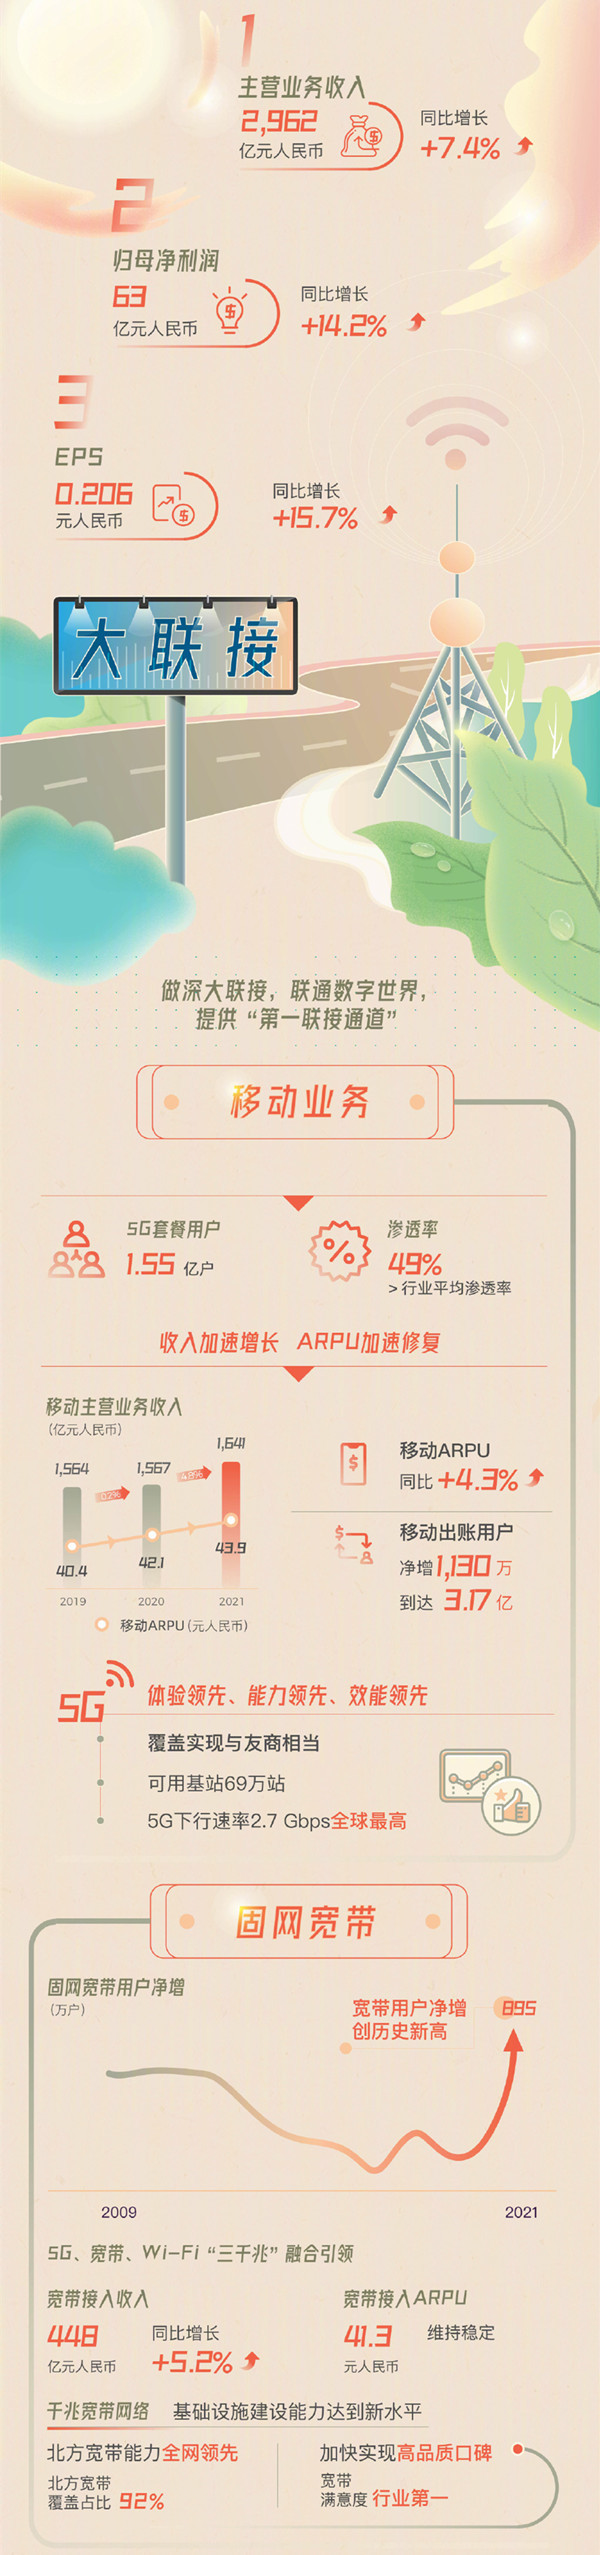 一张图读懂中国联通2021年度业绩